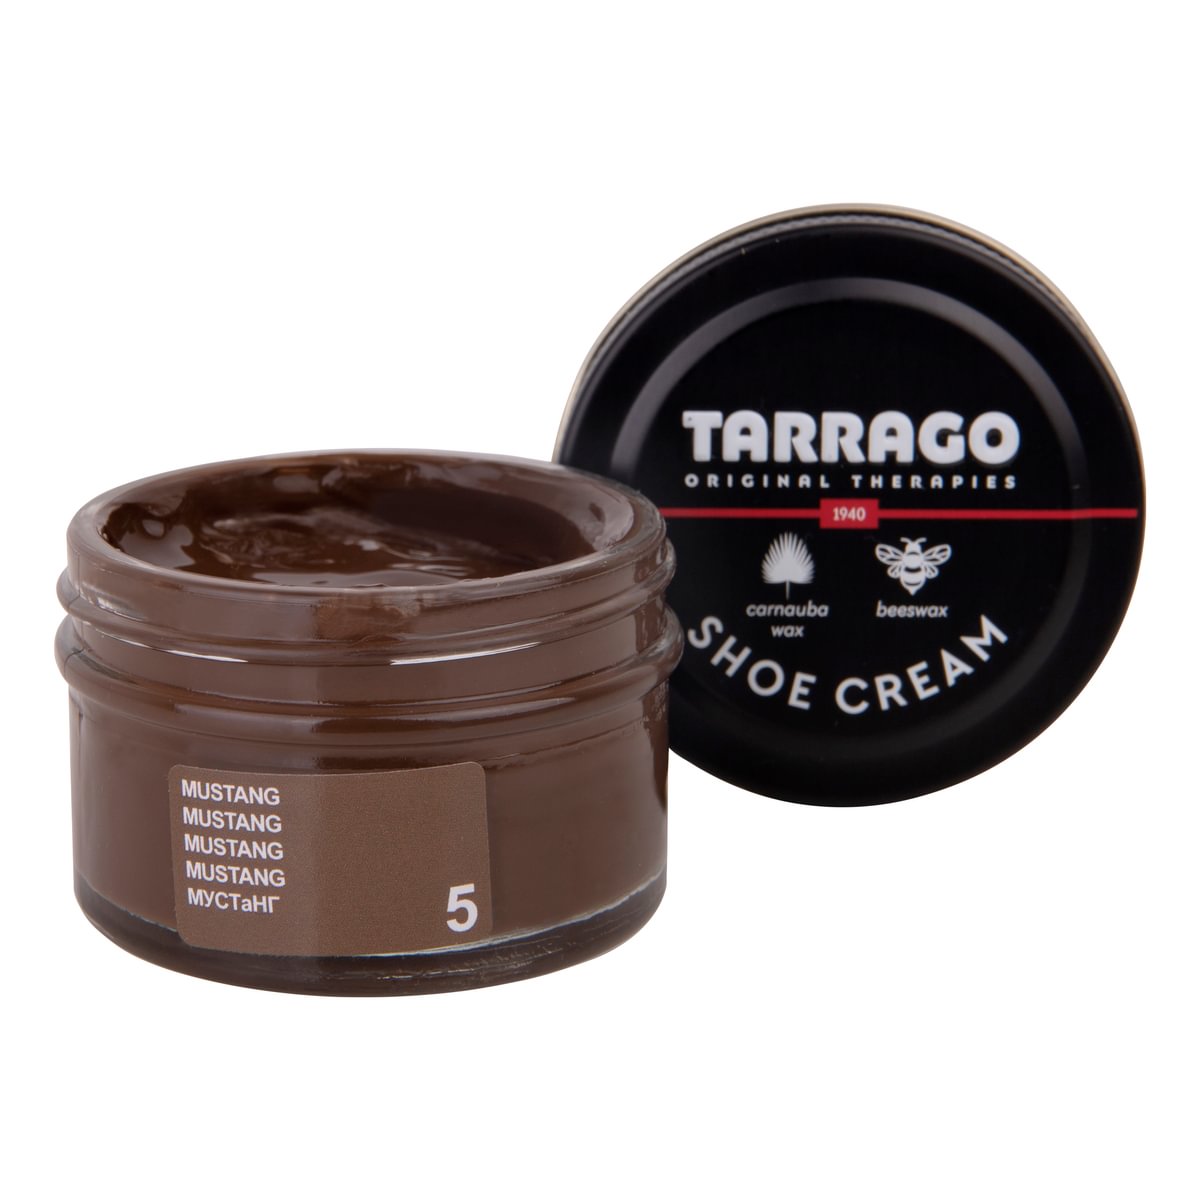 Tarrago Shoe Cream  - Mustang - 5